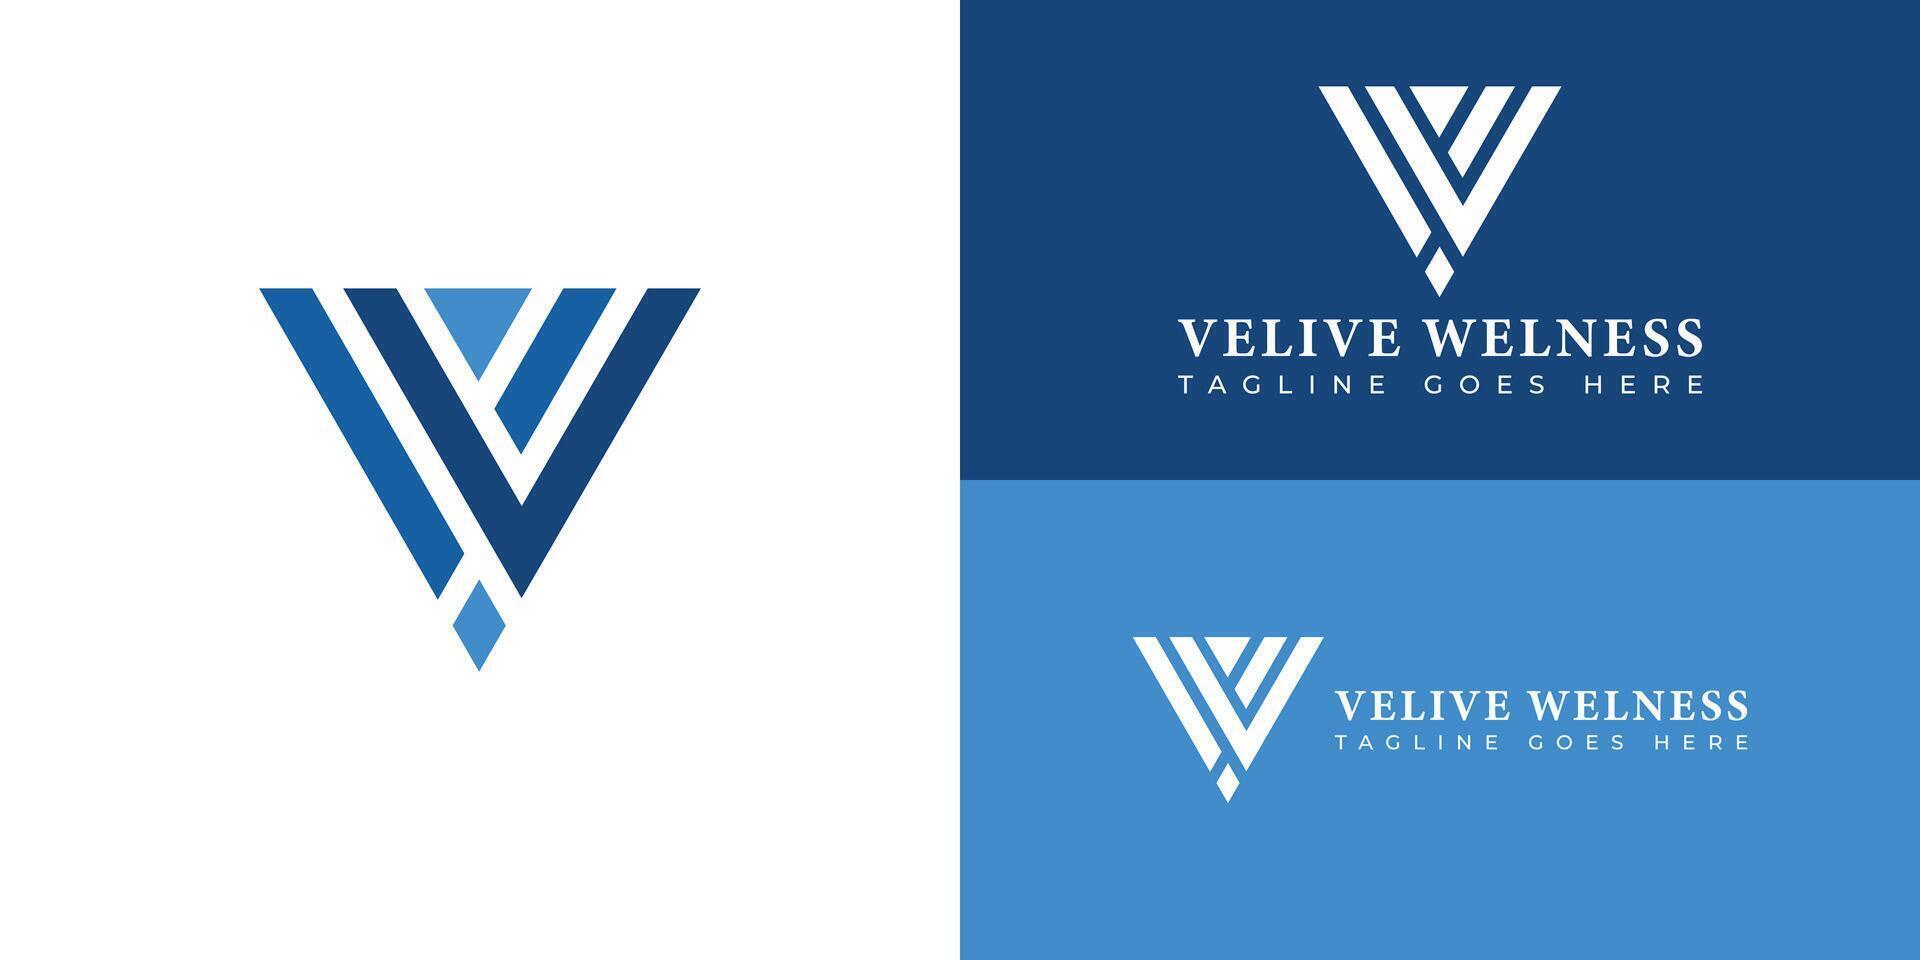 abstrakt första brev vw eller wv logotyp i flera olika blå färger isolerat i flera olika bakgrunder applicerad för wellness företag logotyp också lämplig för de märken eller företag ha första namn vw eller wv. vektor